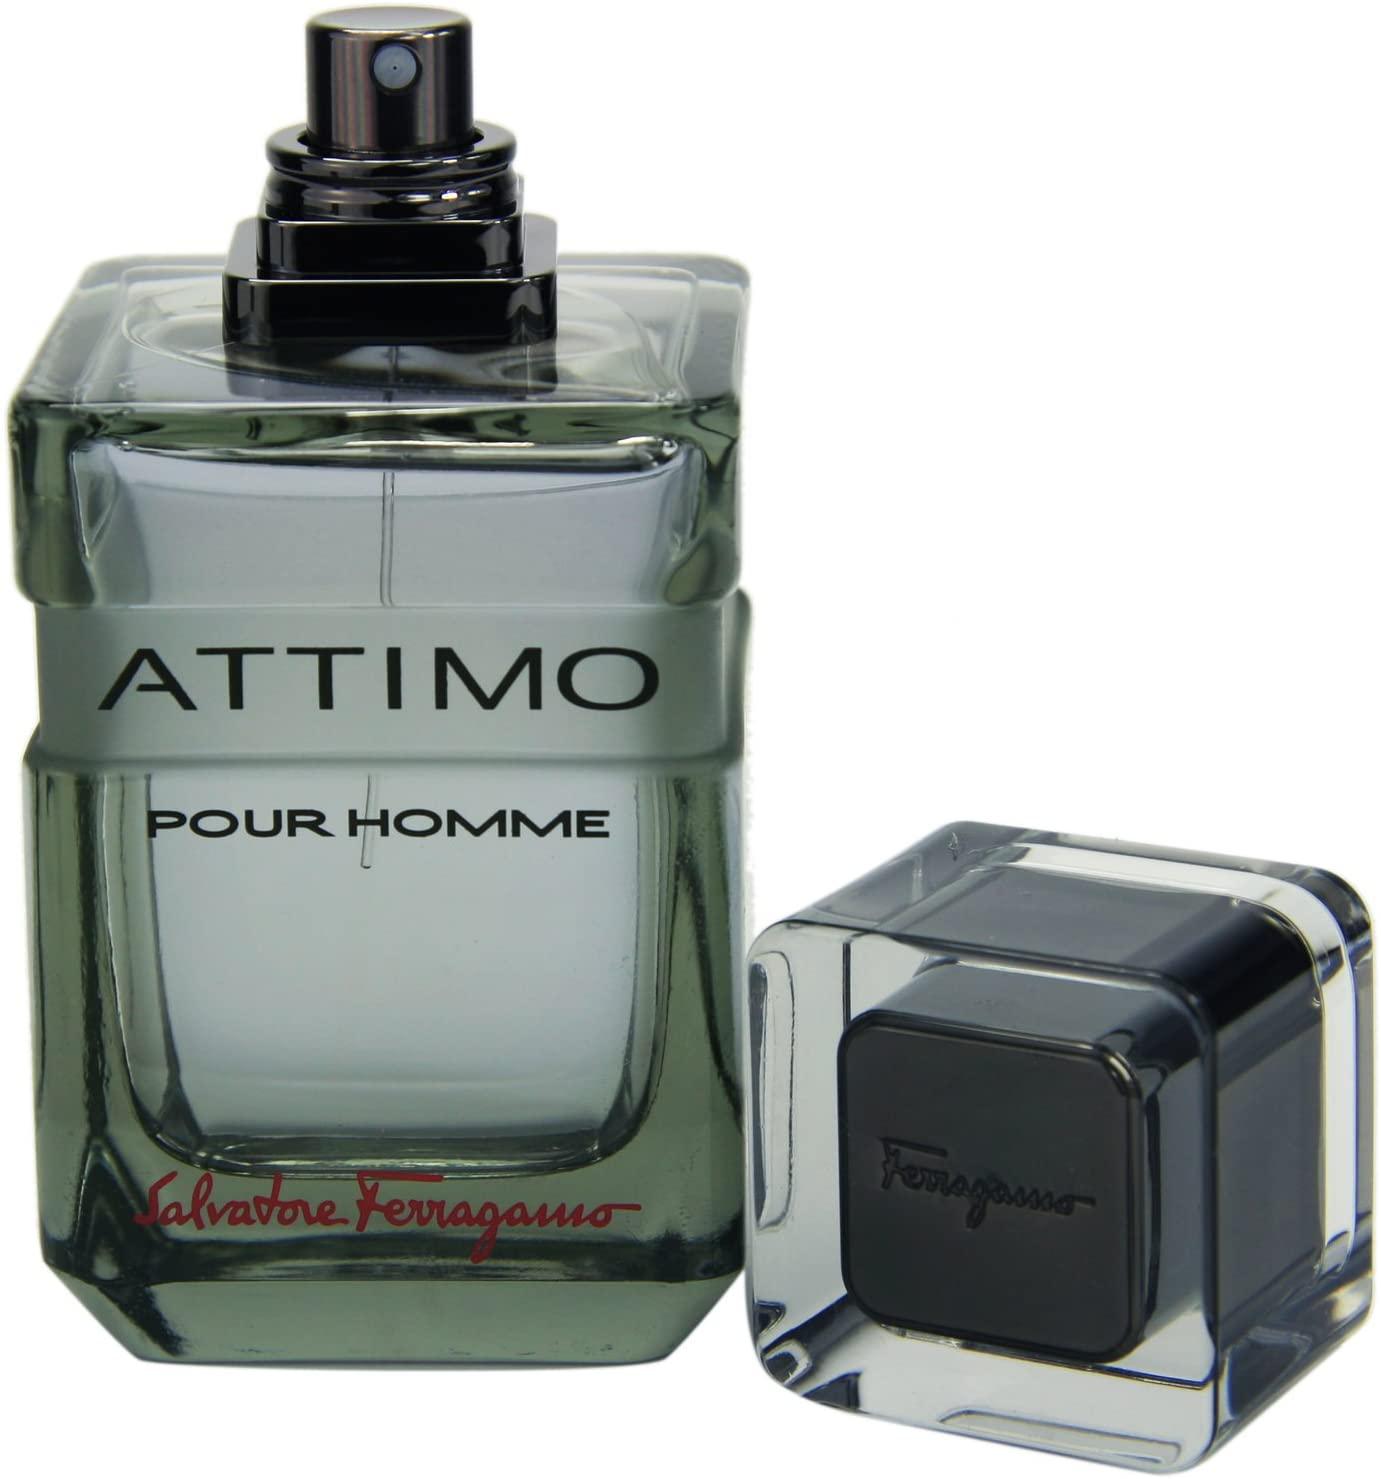 ATTIMO POUR HOMME - Parfum Gallerie